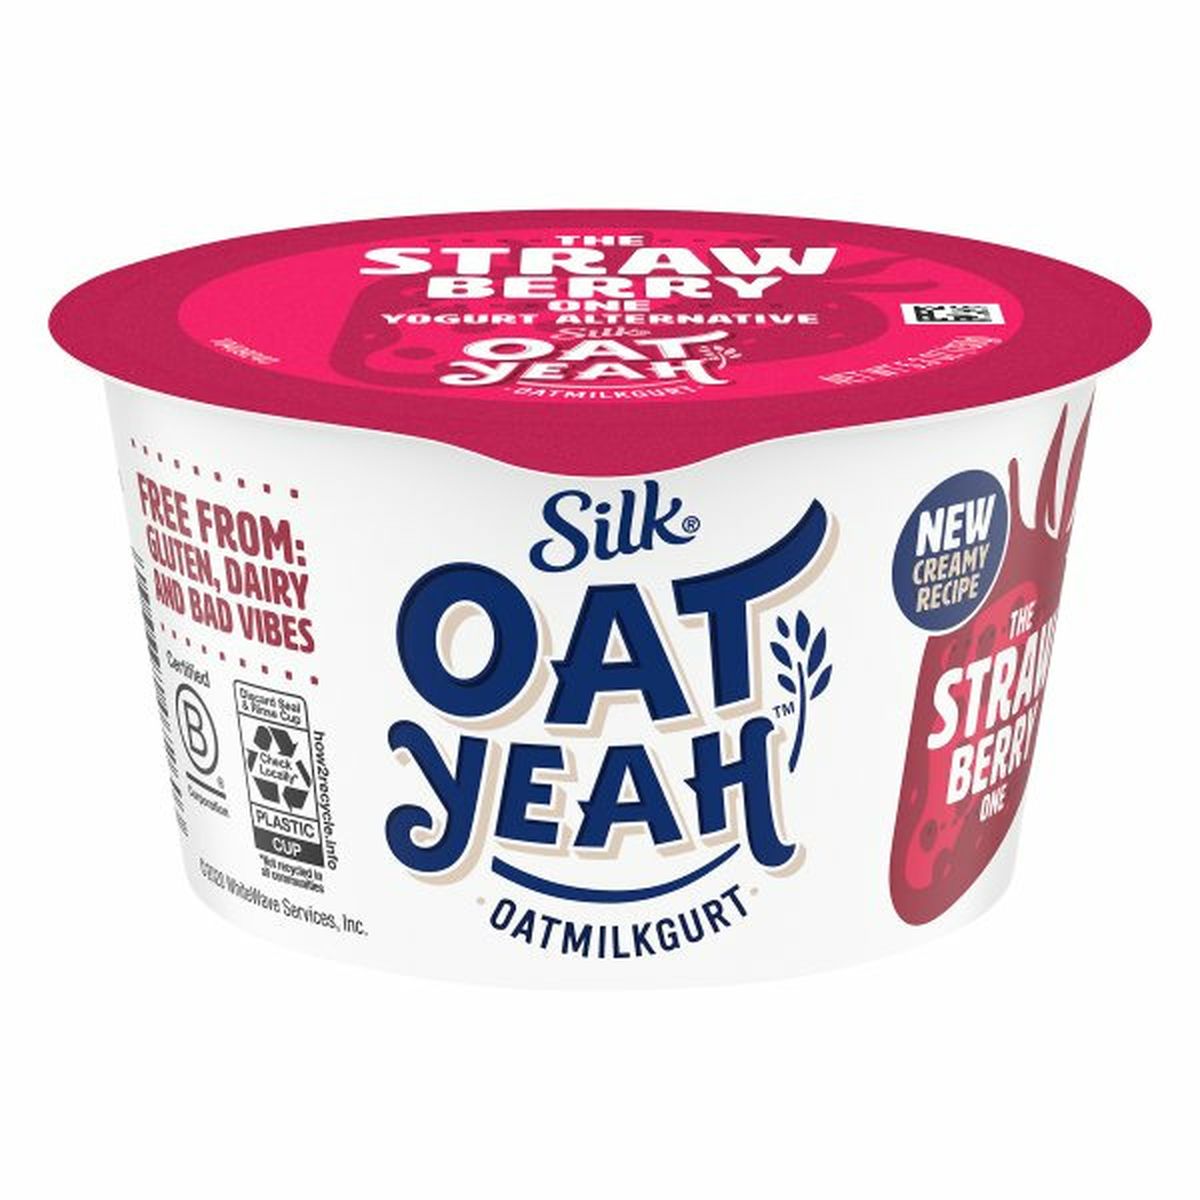 Calories in Silk Oat Yeah Oatmilkgurt, The Strawberry One